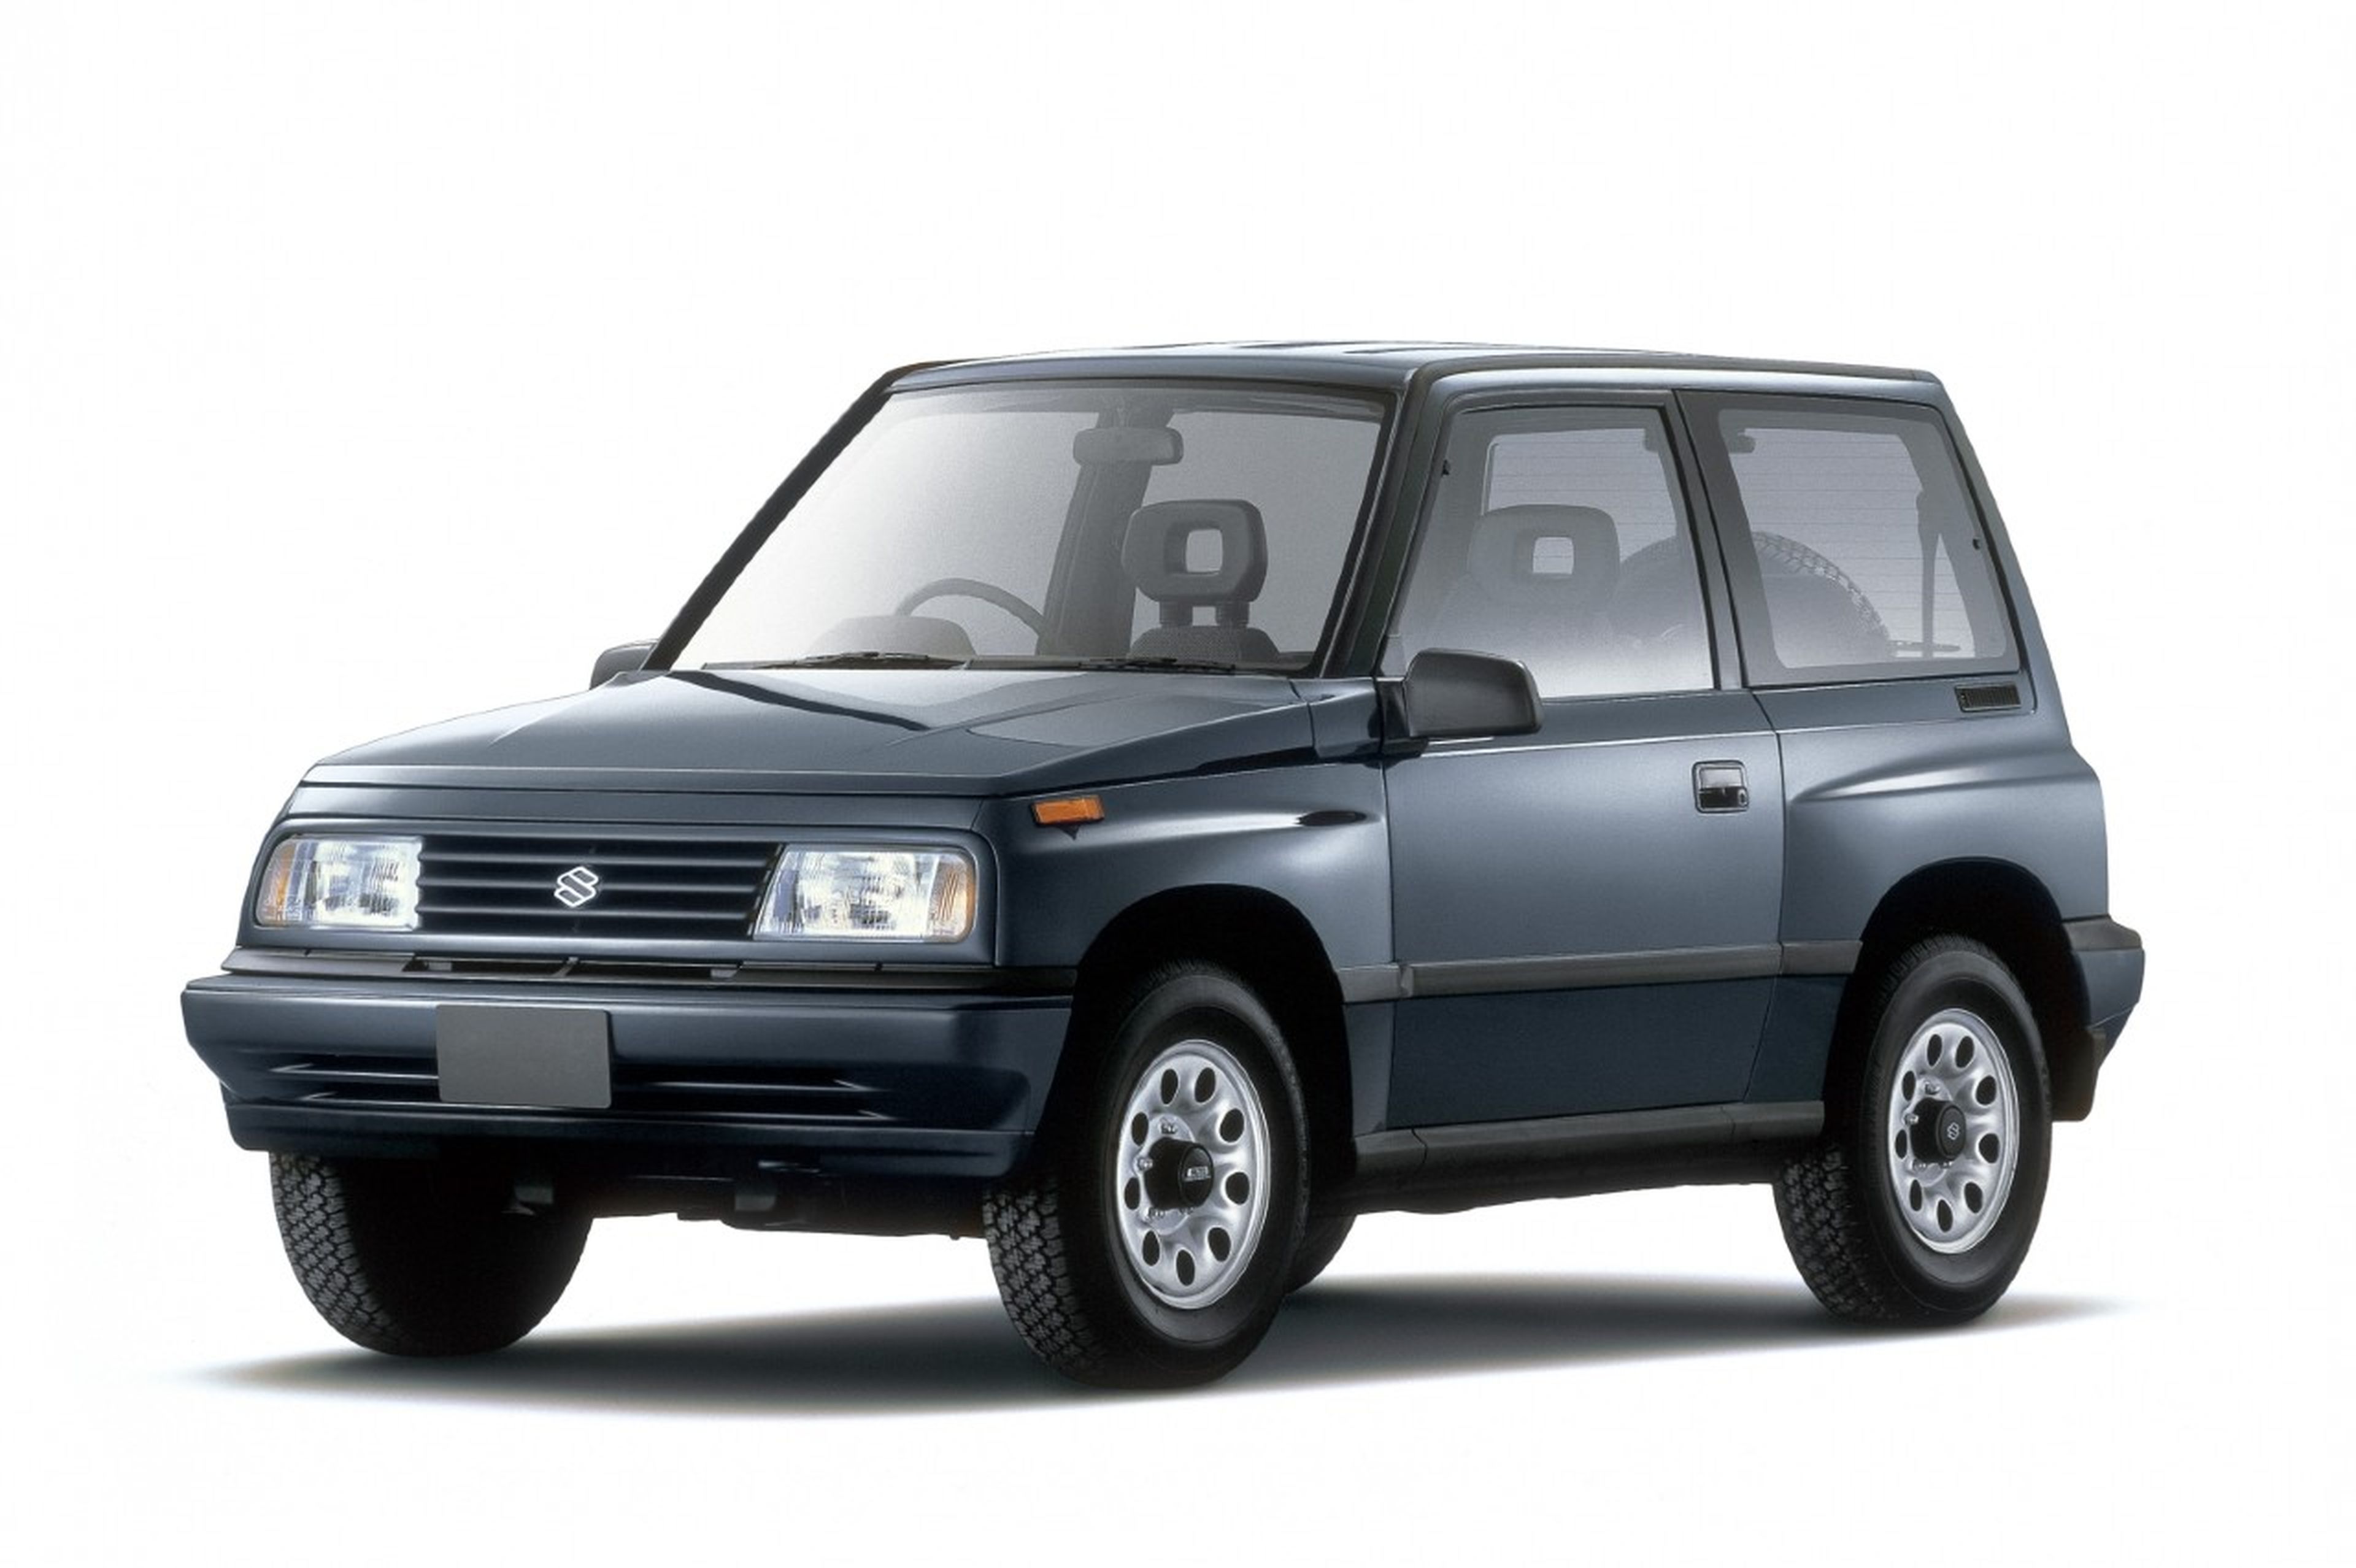 La primera generación del Suzuki Vitara era un todoterreno compacto y muy robusto